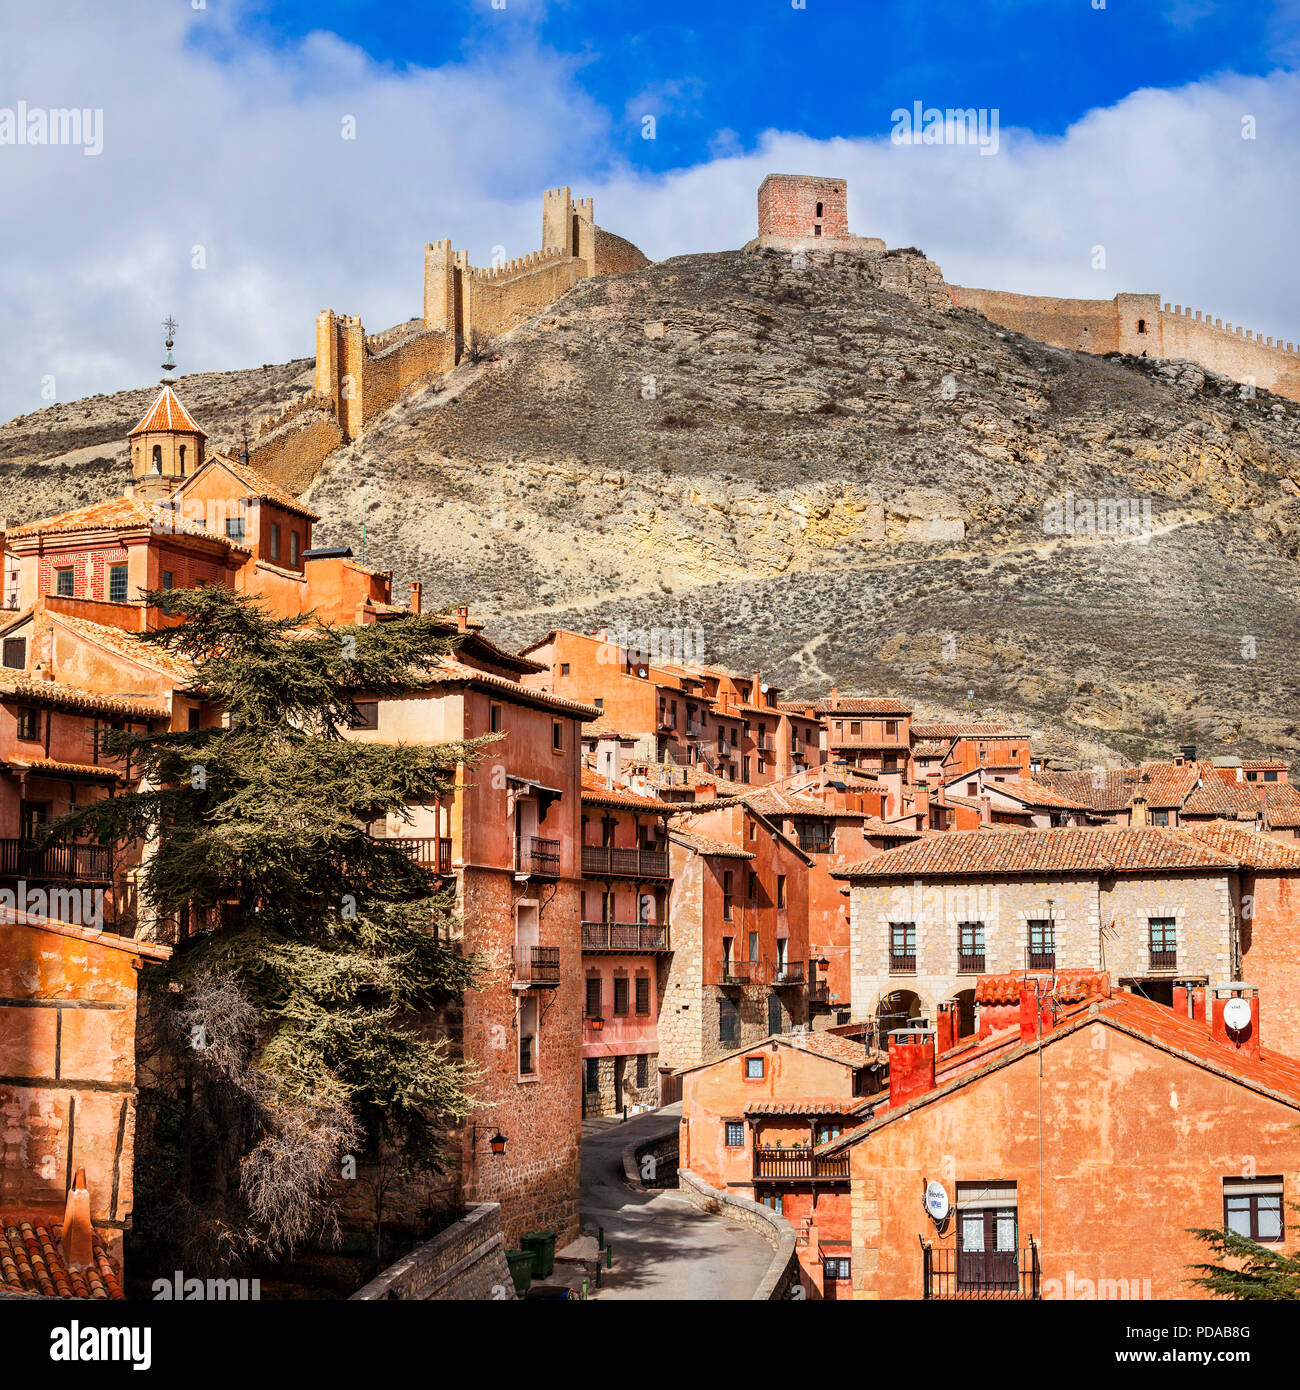 Impressionante Albarracin village,vista con cattedrale e case tradizionali,Spagna. Foto Stock